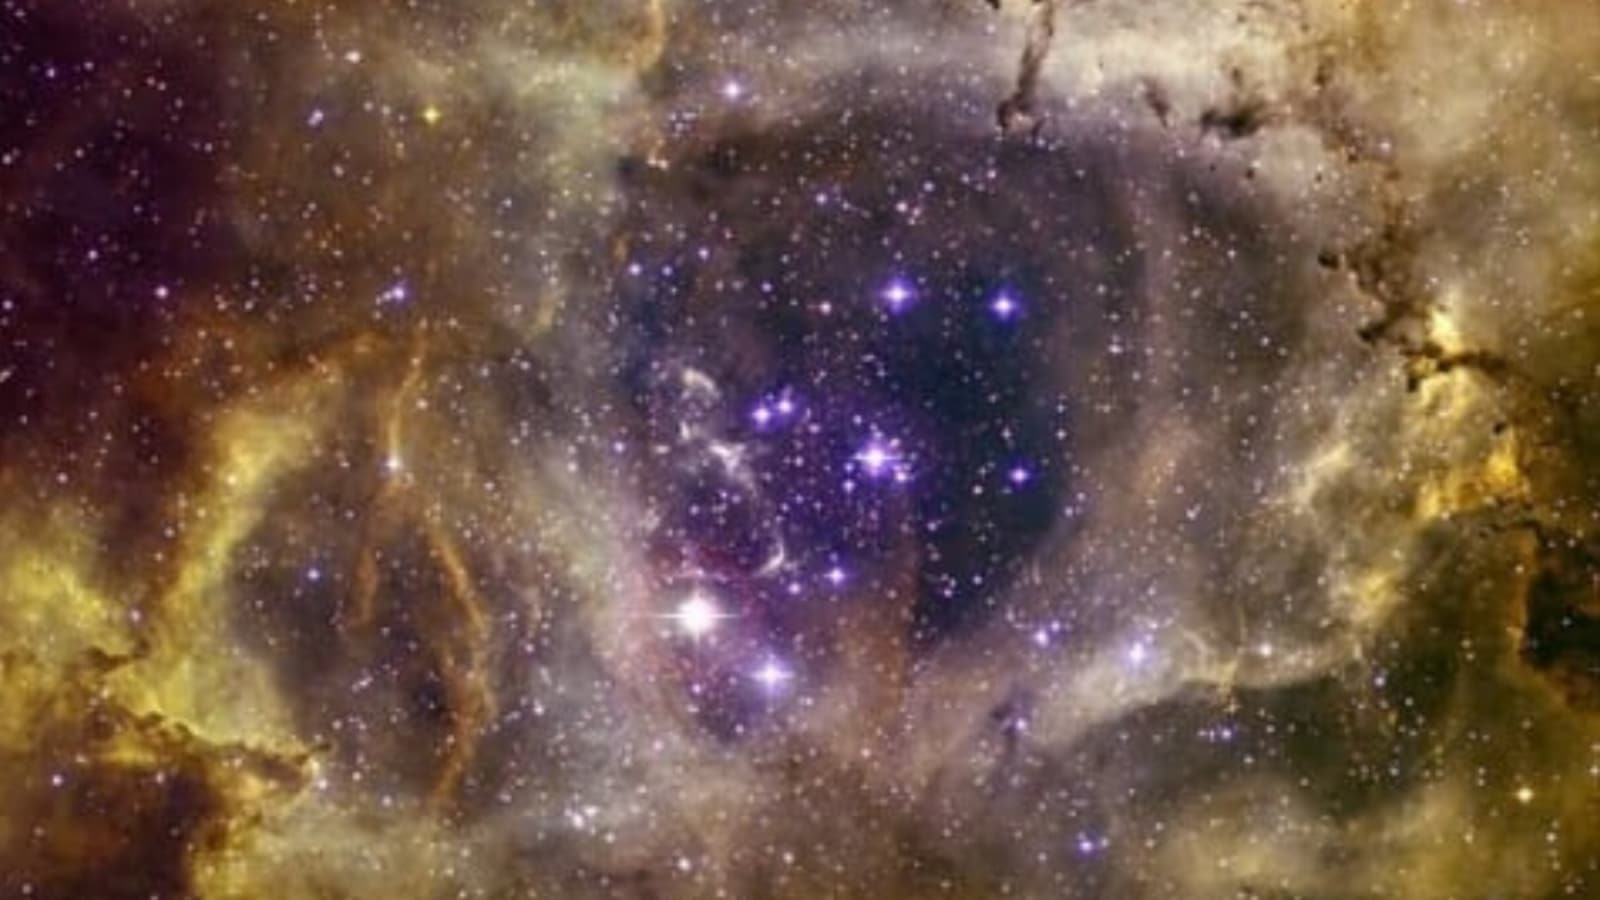 Sternenschädel!  Die NASA teilt ein erschreckendes Bild des Rosettennebels, das vom Chandra-Observatorium aufgenommen wurde